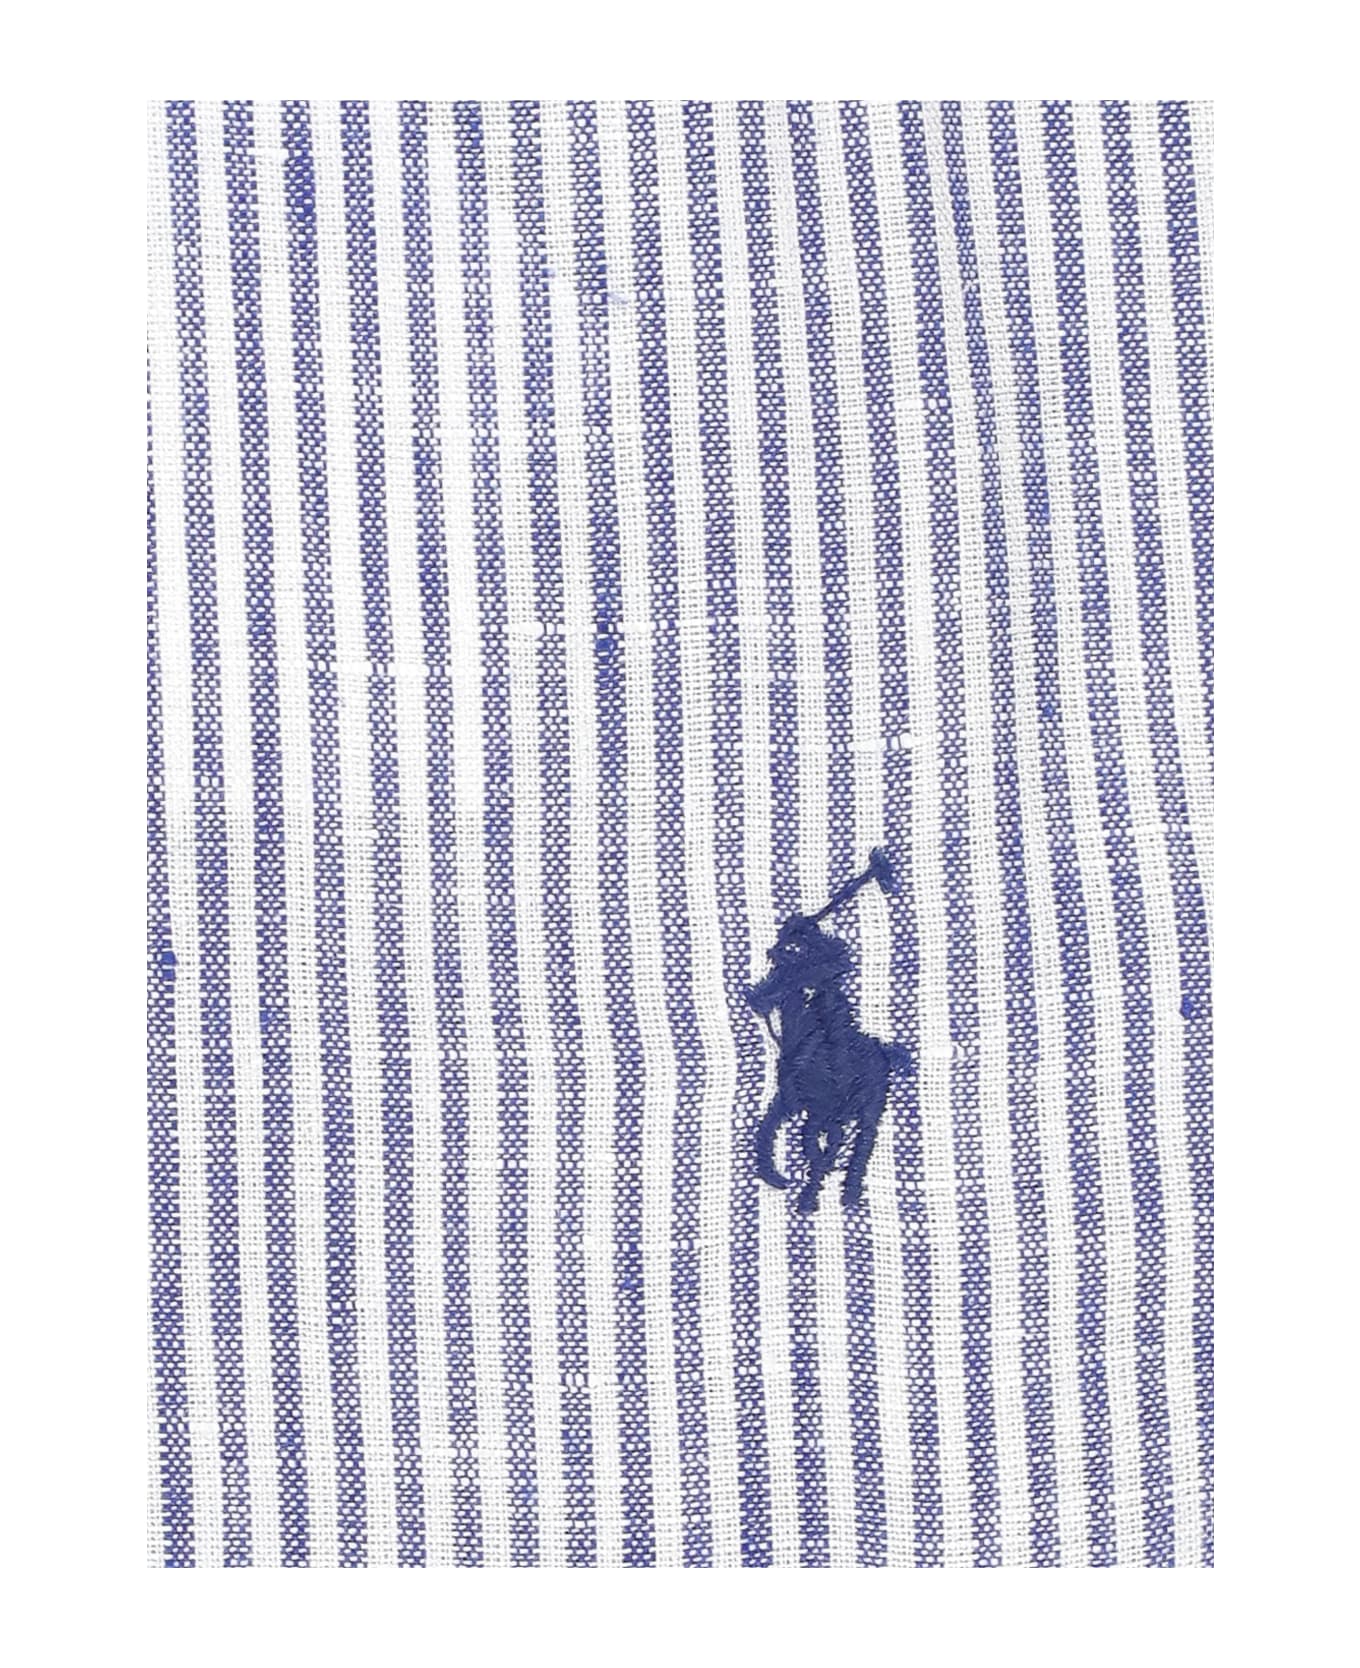 Ralph Lauren Pony Cotton Shirt Polo Ralph Lauren - Blue